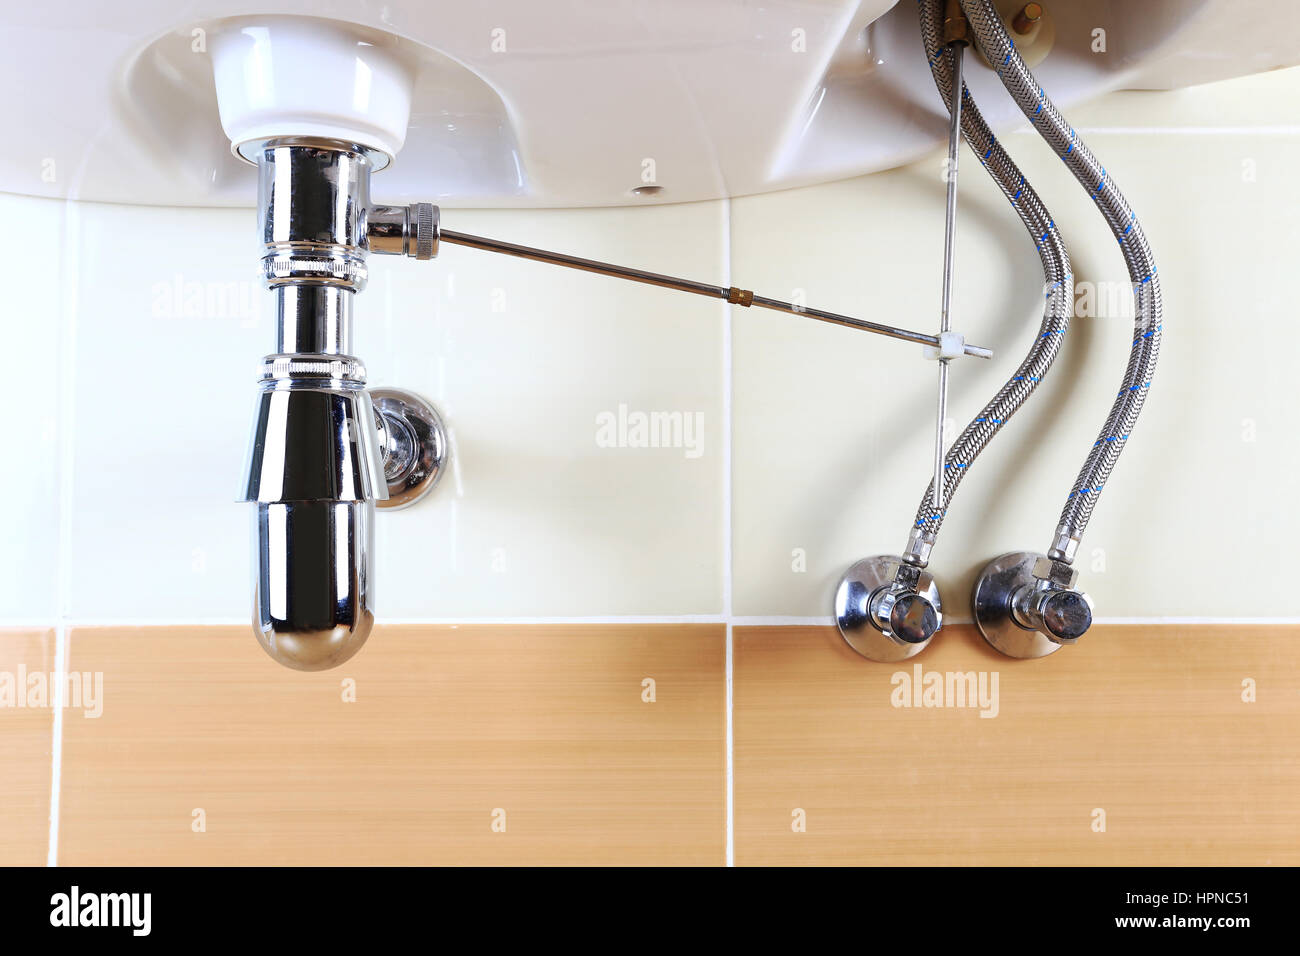 Saubere Waschtisch Waschbecken. Chrom-Rohren und Ventilen. Helles Badezimmer Hintergrund. Stockfoto